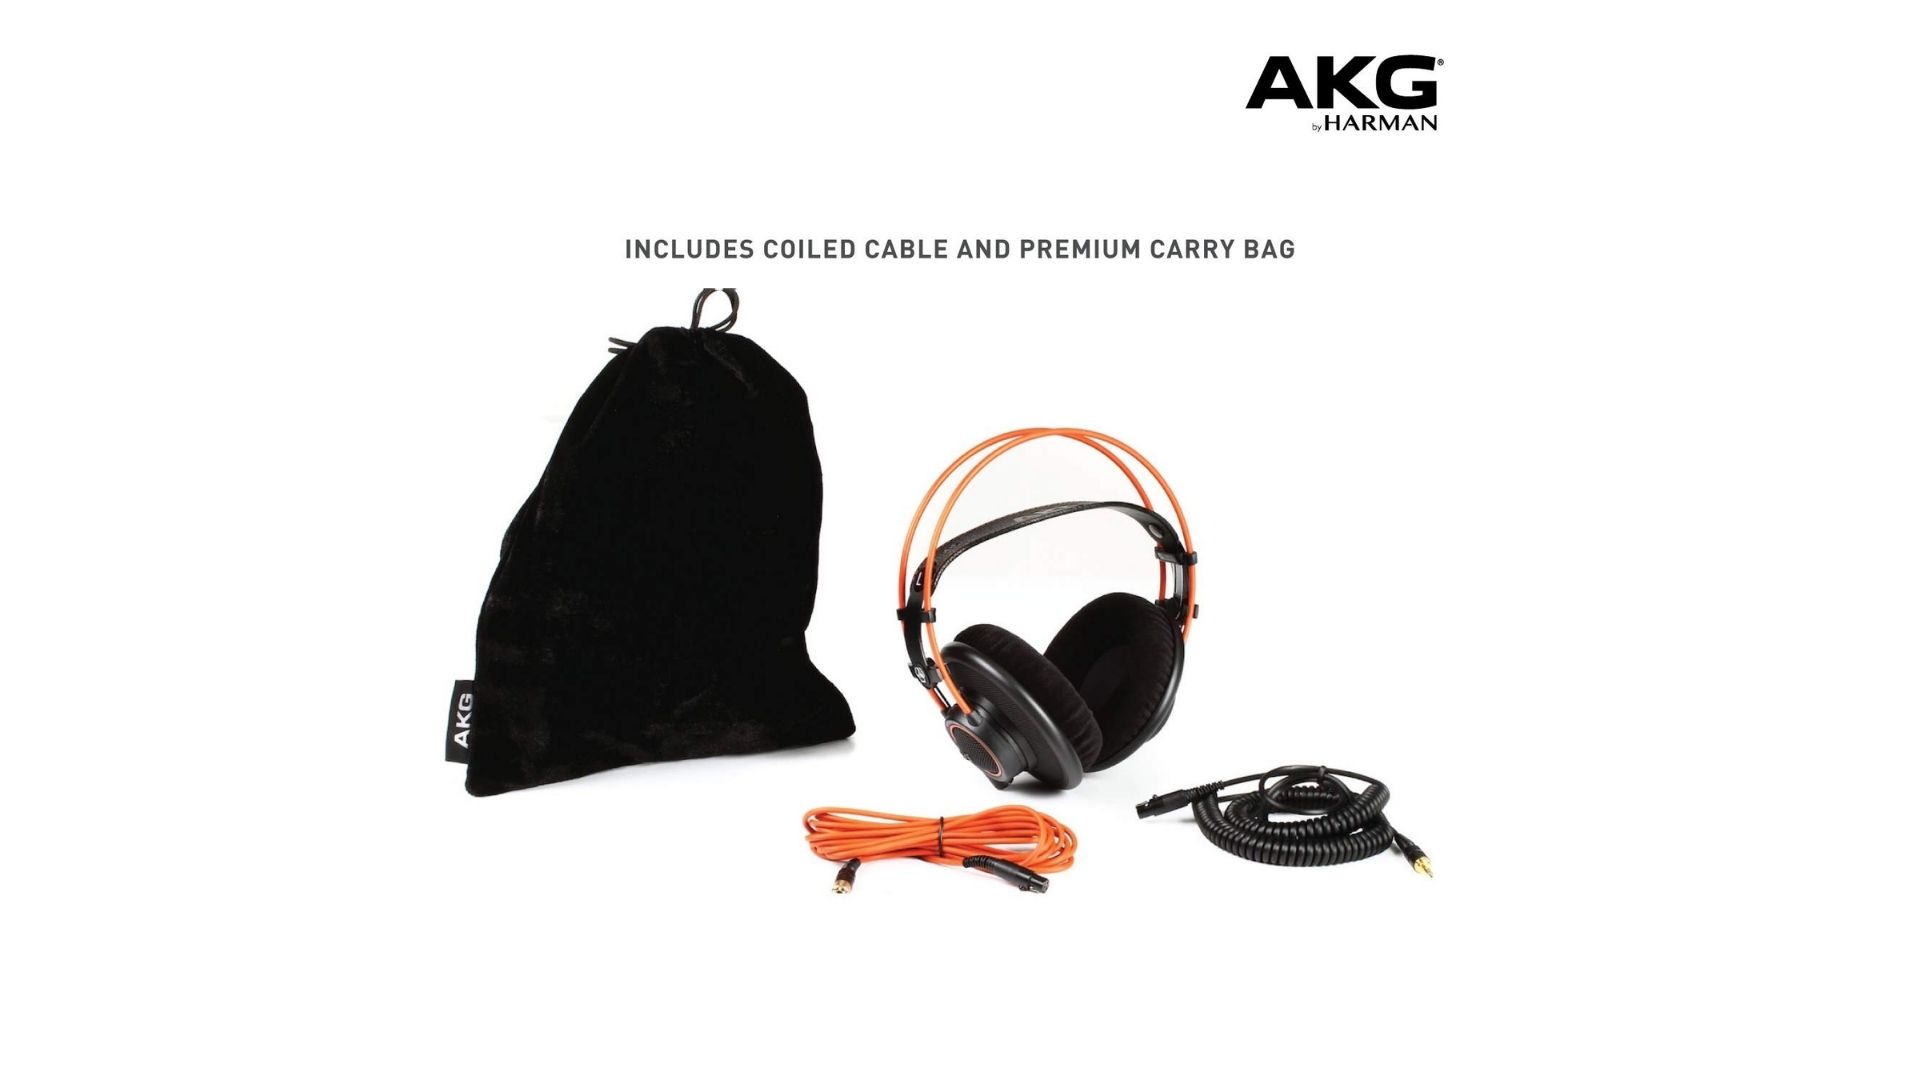 akg k712 pro studio headphones